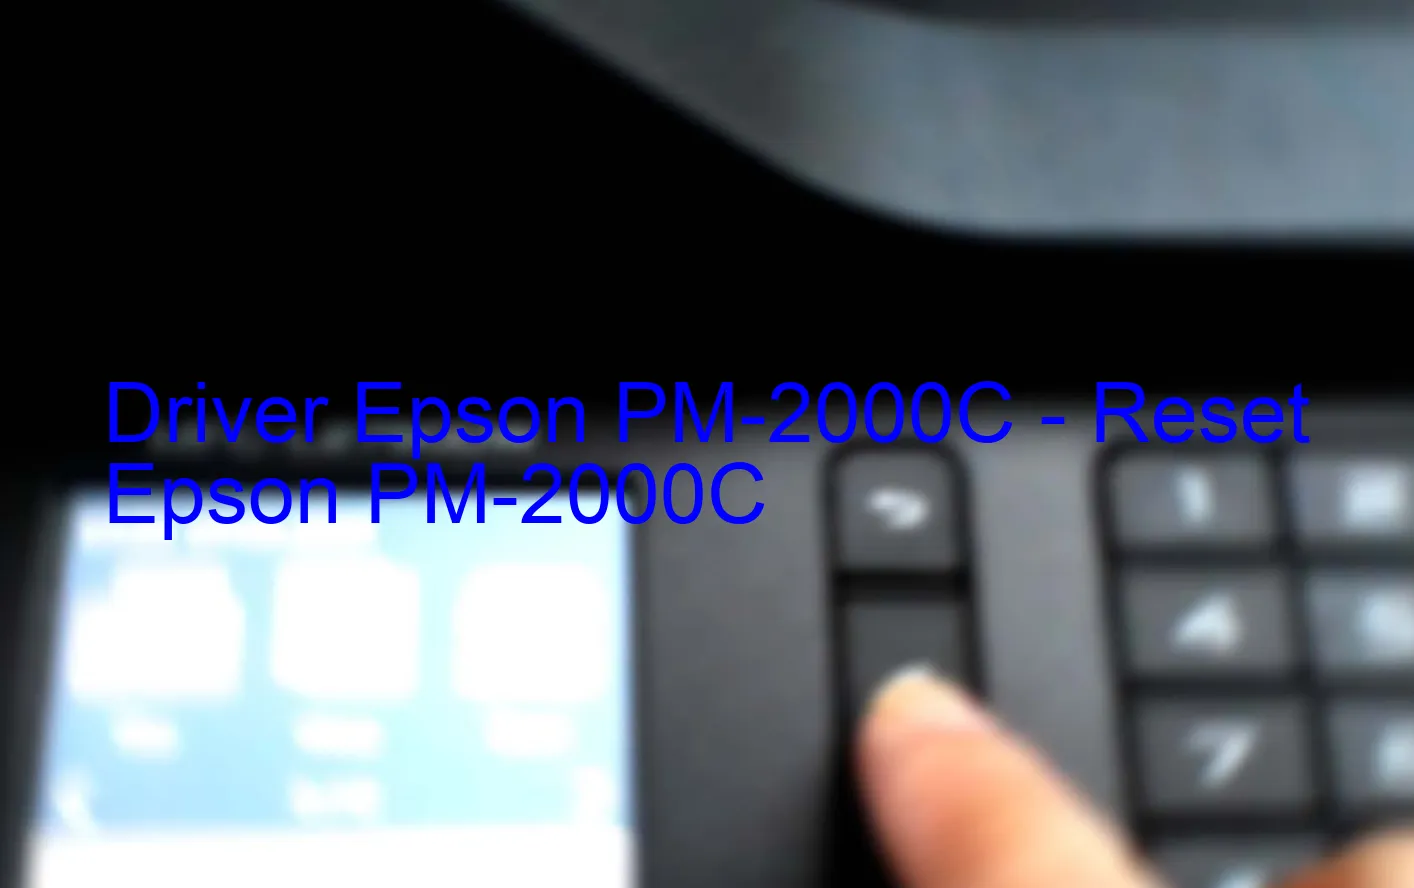 Epson PM-2000Cのドライバー、Epson PM-2000Cのリセットソフトウェア